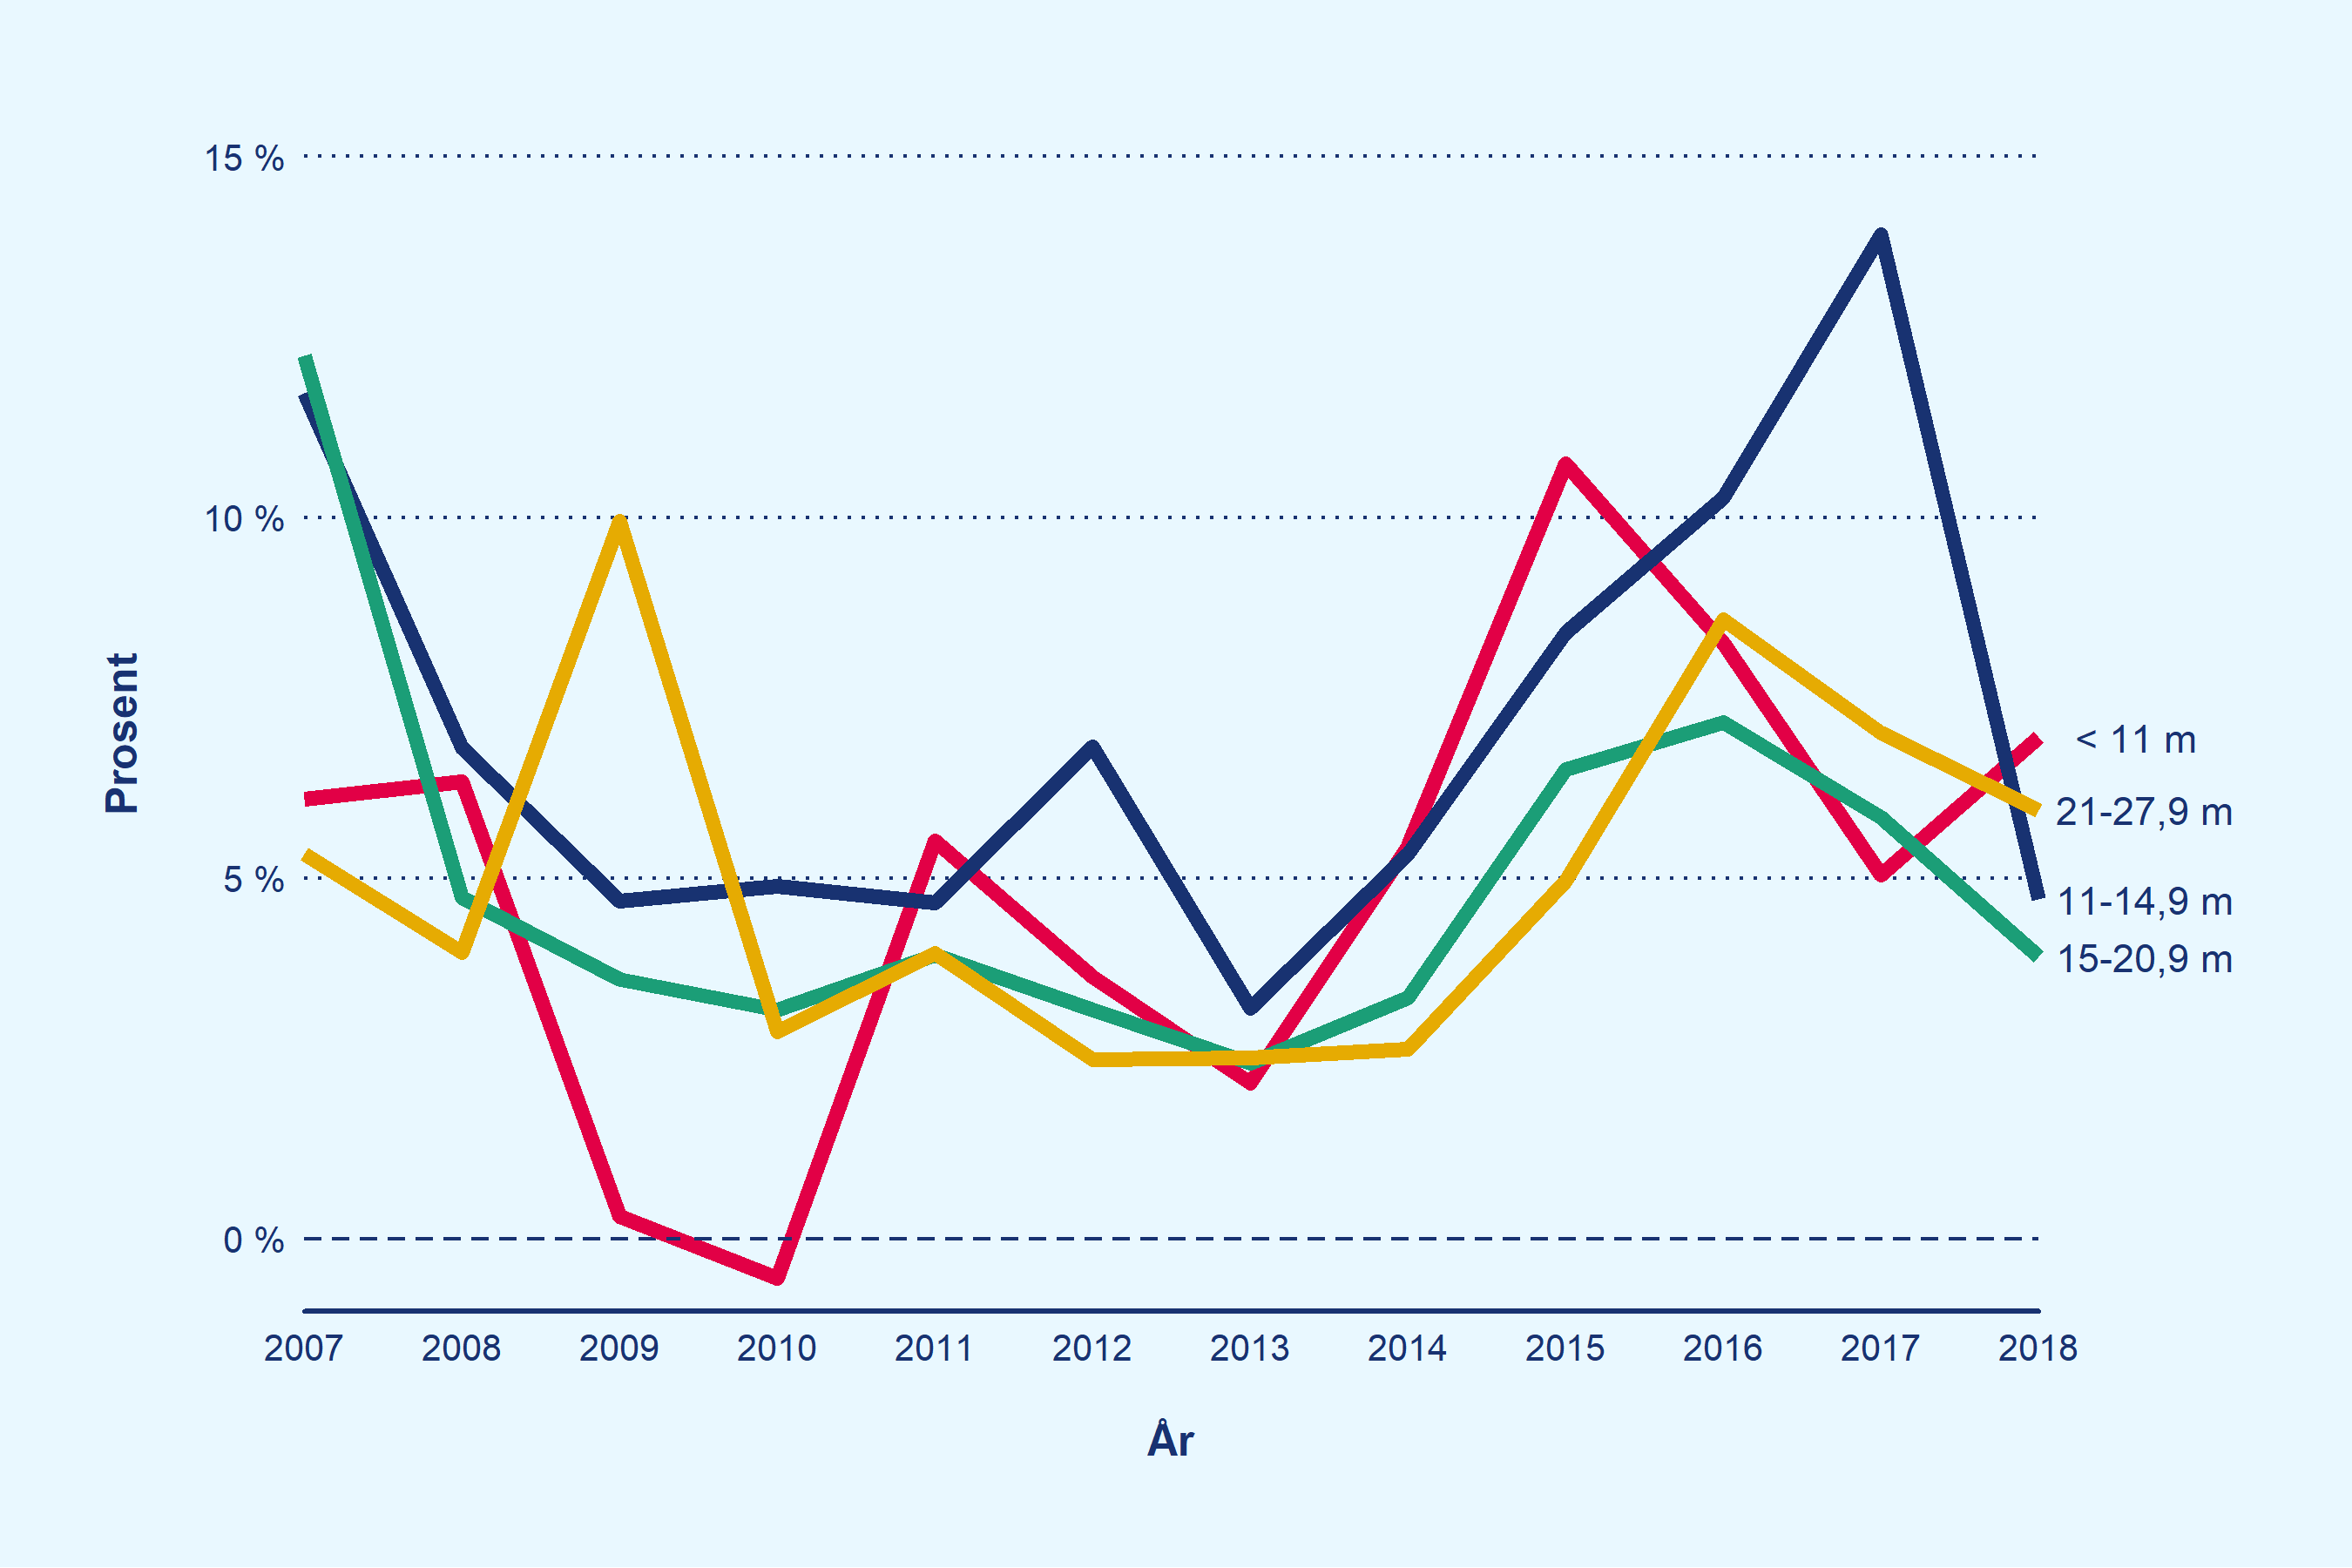 Fire grafer som hver representerer en fartøygruppe, viser hvordan totalrentekapabiliteten utvikler seg fra år til år i de ulike gruppene i perioden.